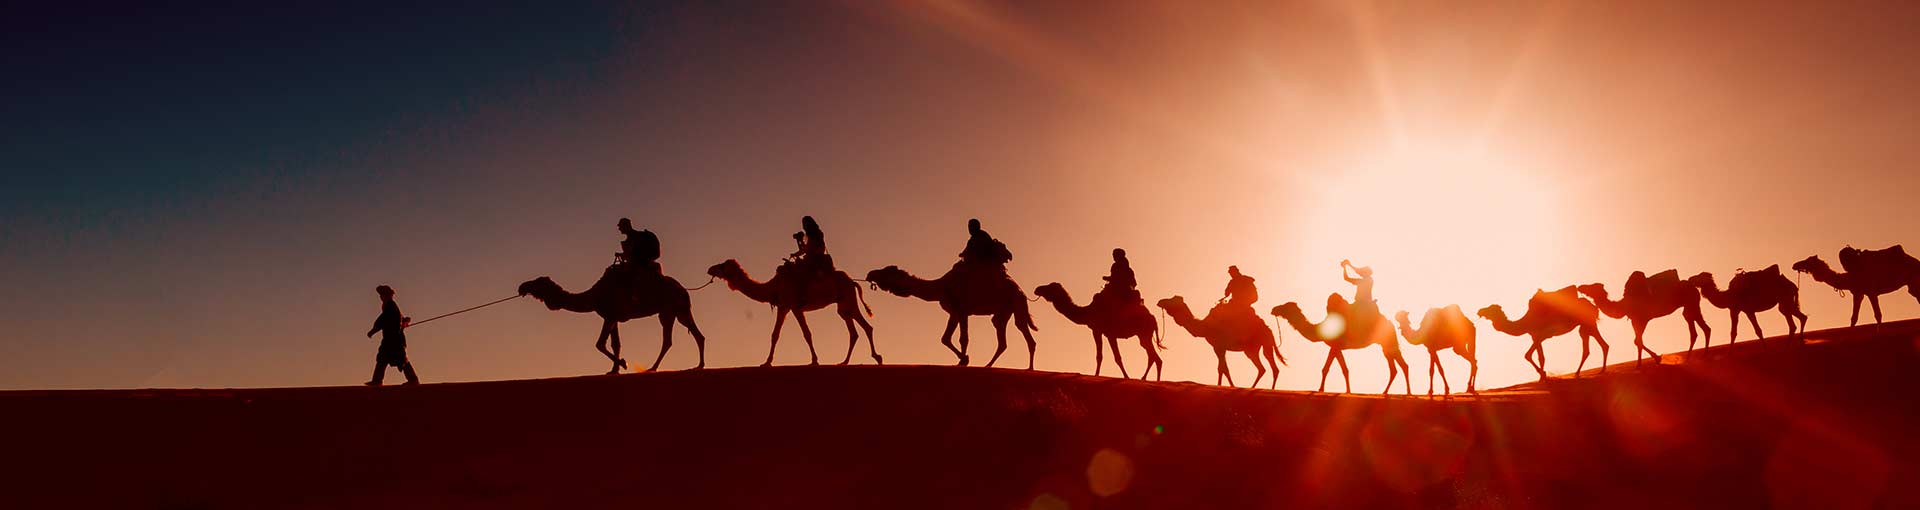 Тур в Марокко на верблюдах